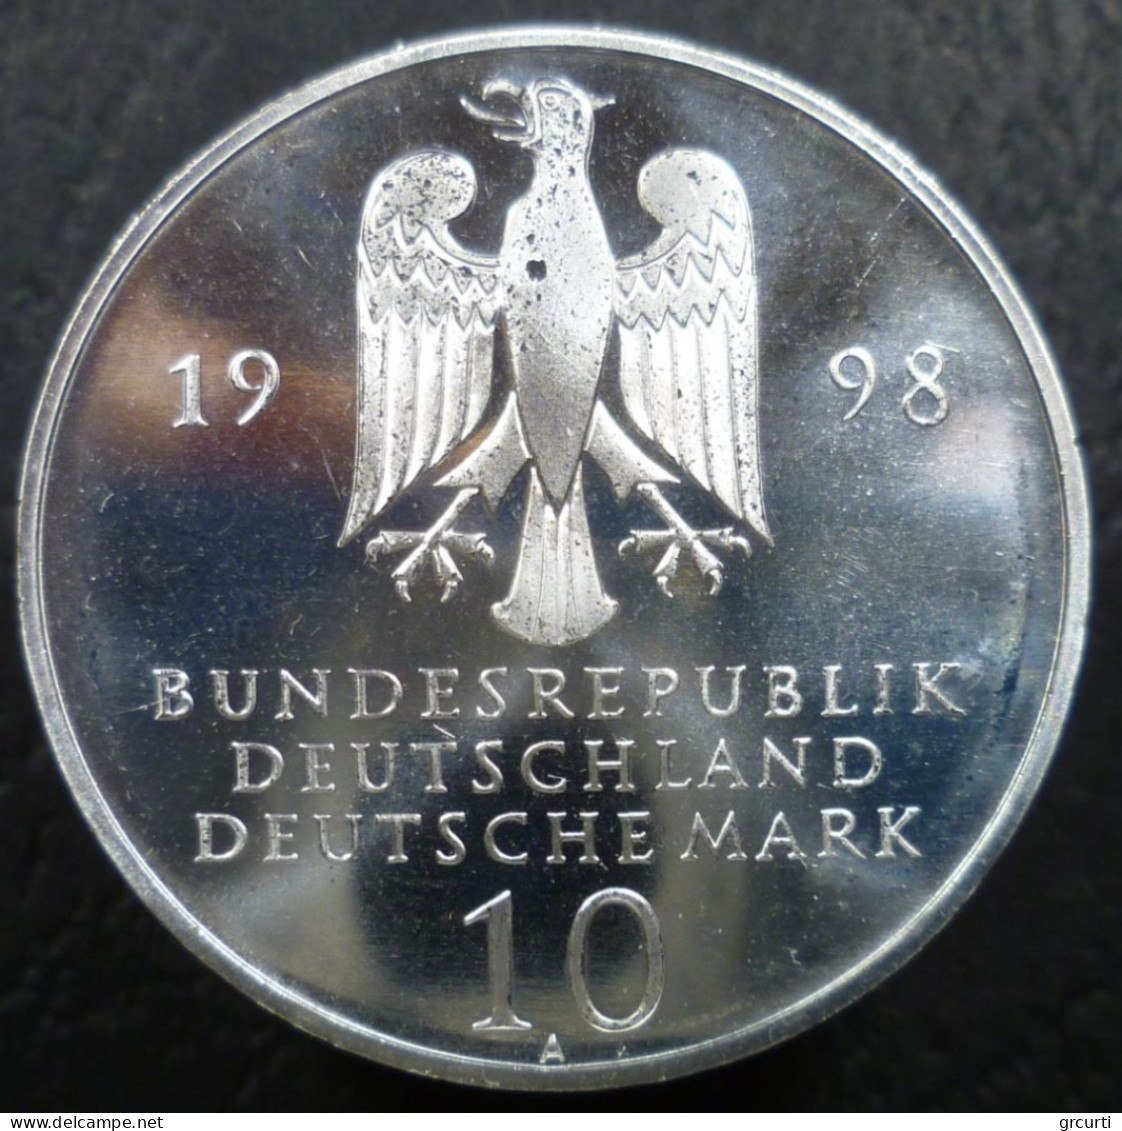 Germania - RFT - 10 Mark 1998 A - 300° Franckesche Stiftungen - KM# 194 - 10 Marchi